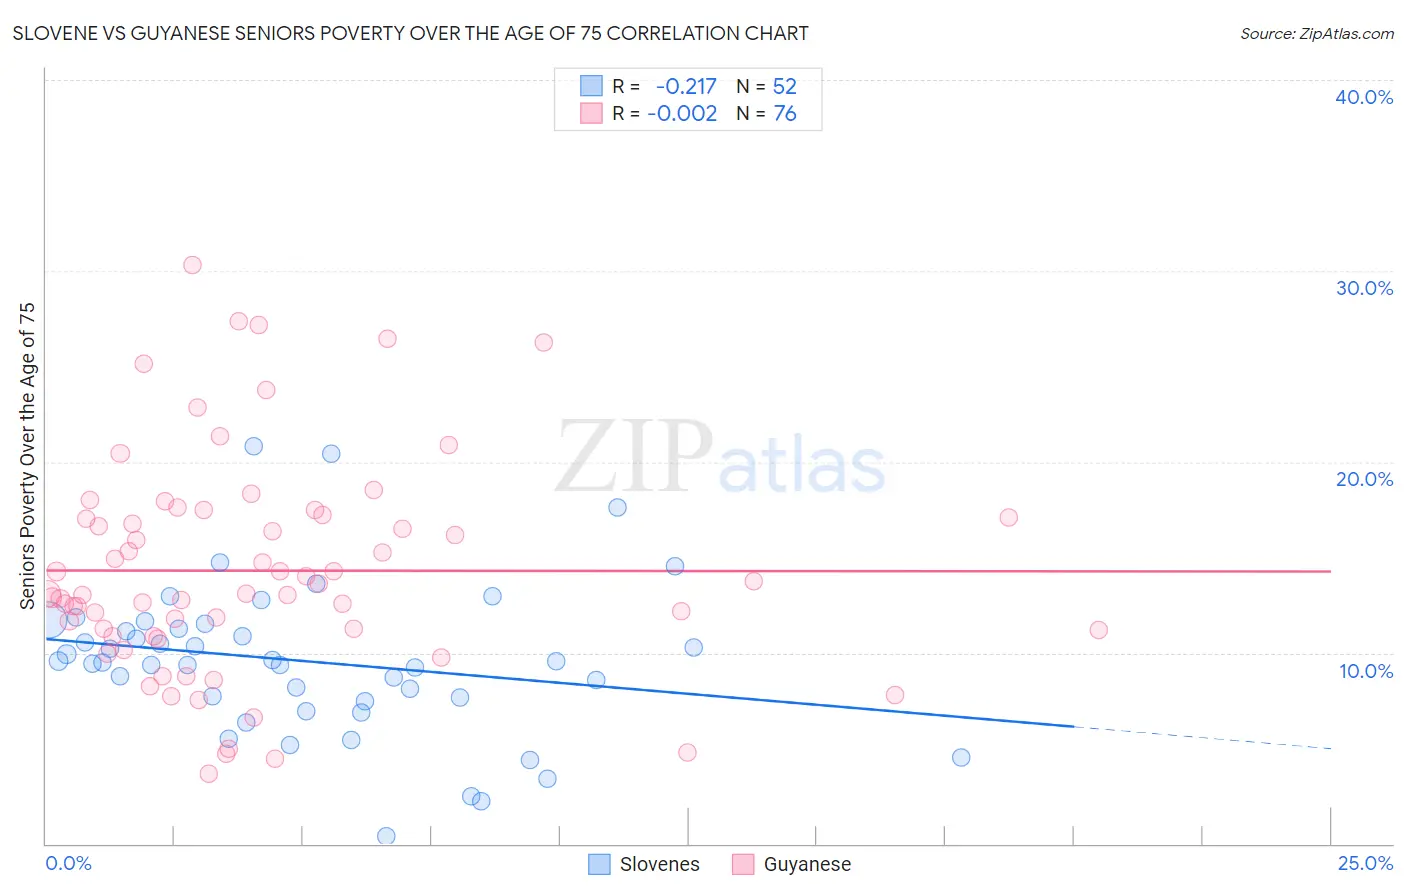 Slovene vs Guyanese Seniors Poverty Over the Age of 75